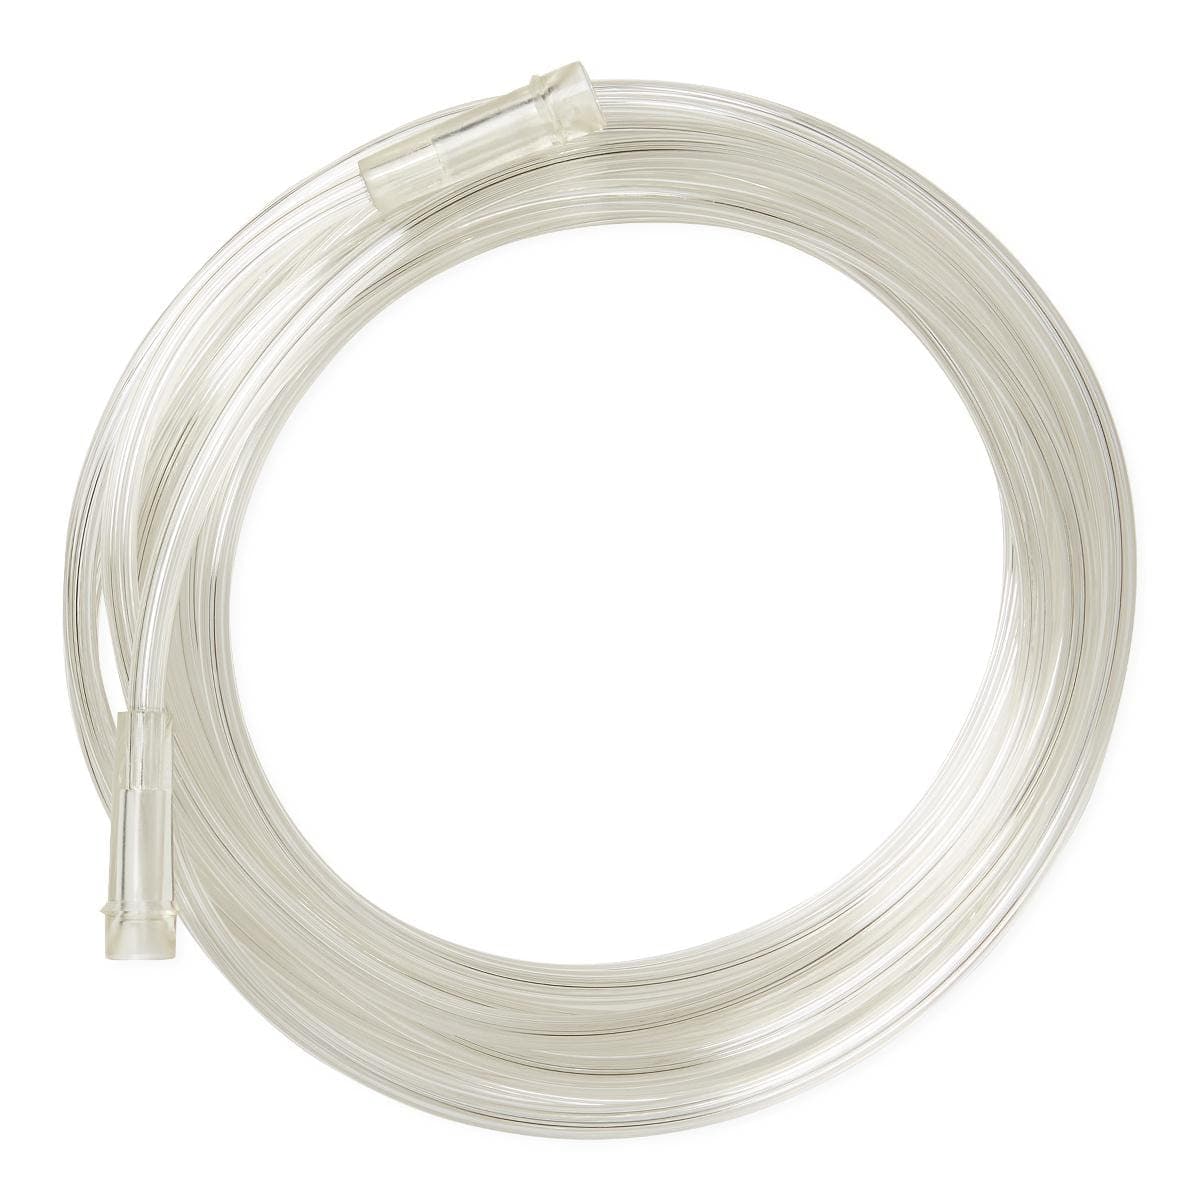 Medline Medline Clear Oxygen Tubing with Standard Connector HCS4524